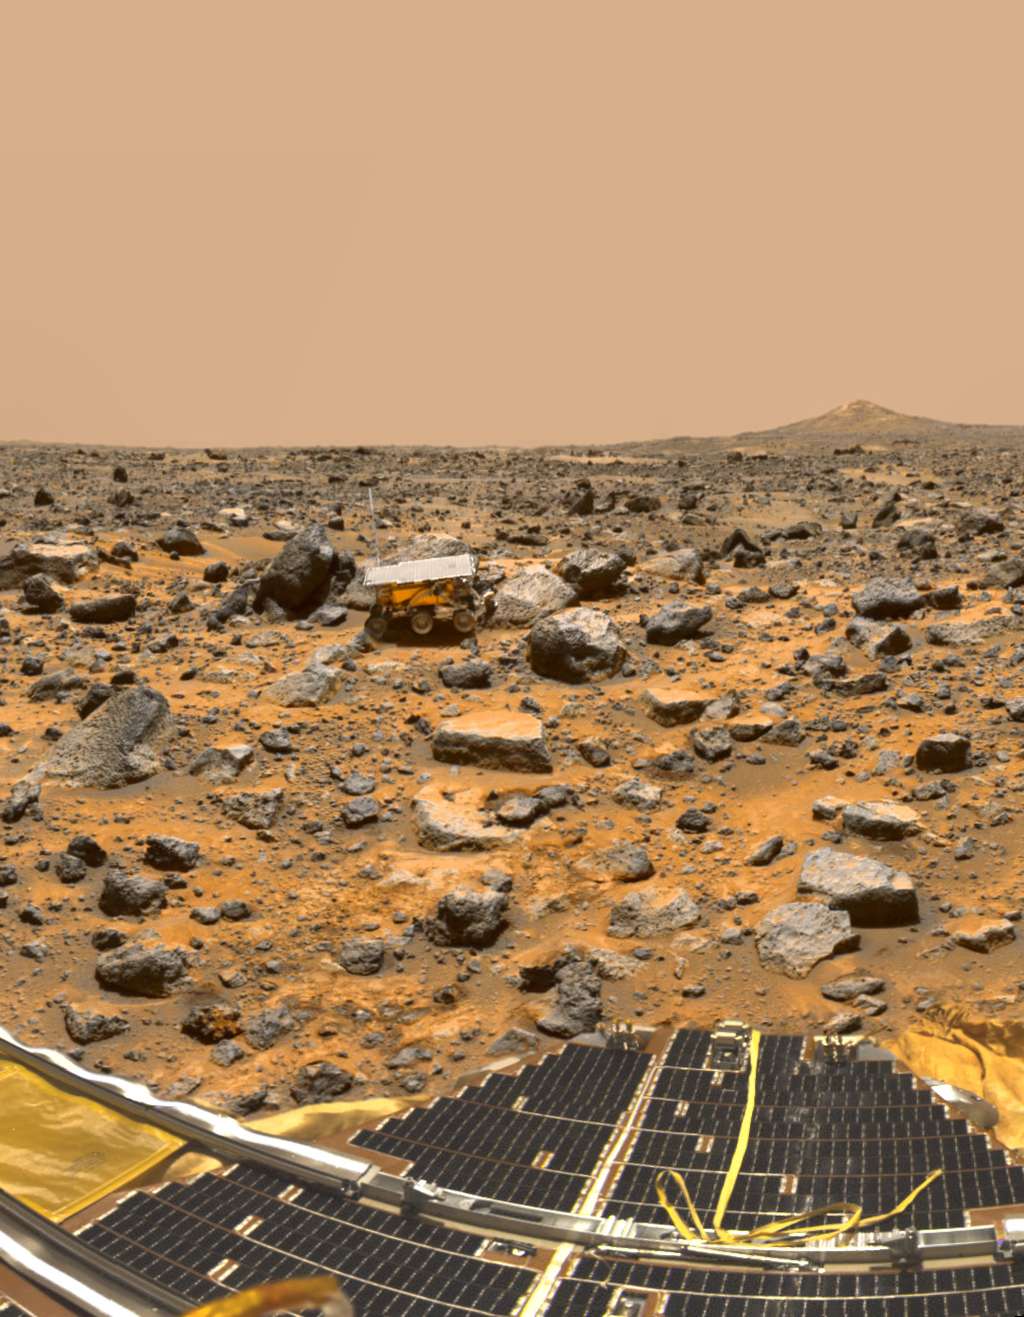 Le site où s’est posé Pathfinder (on aperçoit un de ses panneaux solaires au premier plan) en 1997. À quelques mètres de là, dans la plaine jonchée de débris, le petit rover Sojourner, premier astromobile à gambader sur Mars. © Nasa, JPL